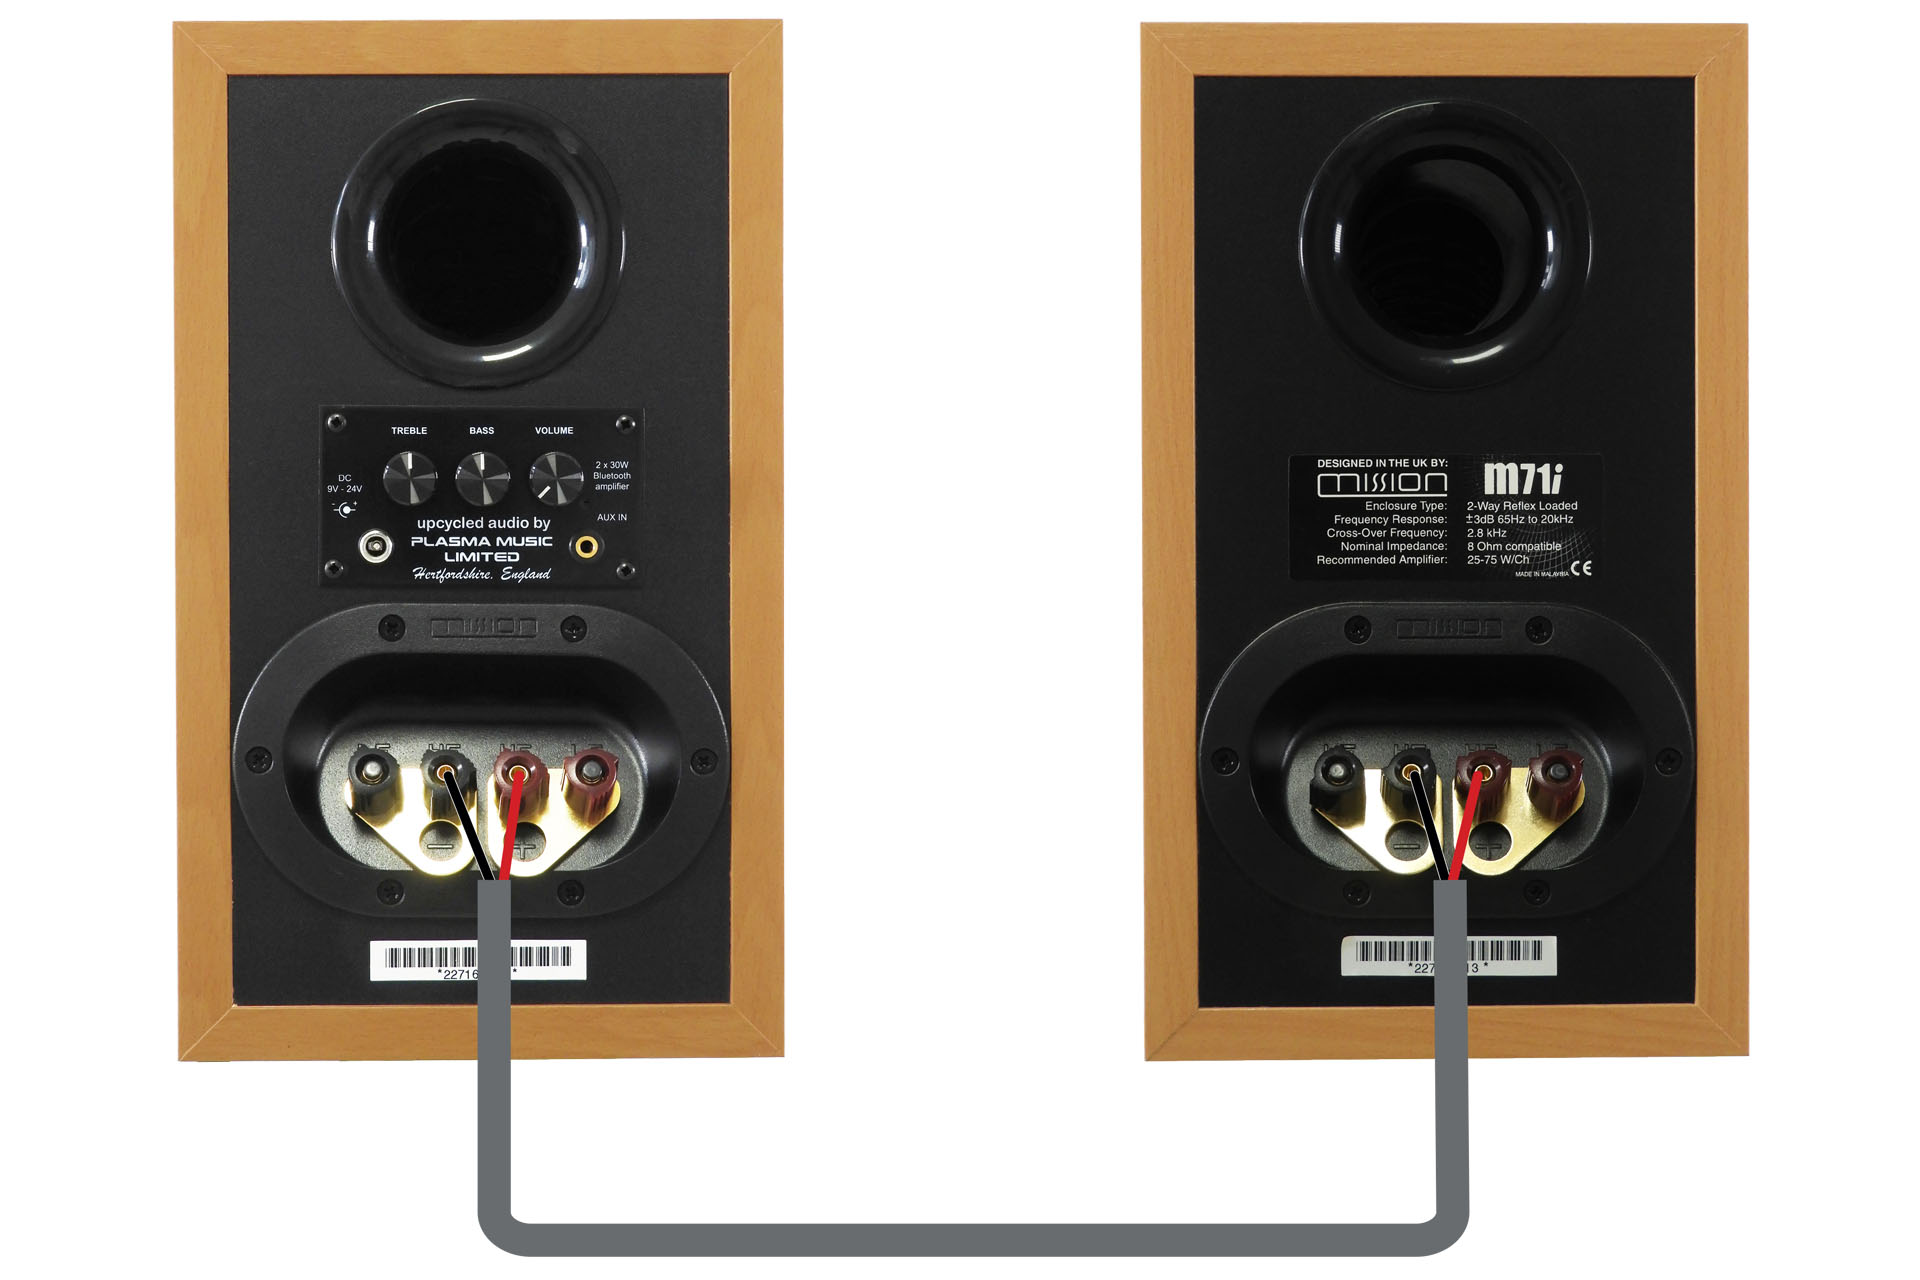 Link Speakers via speaker terminals for full stereo